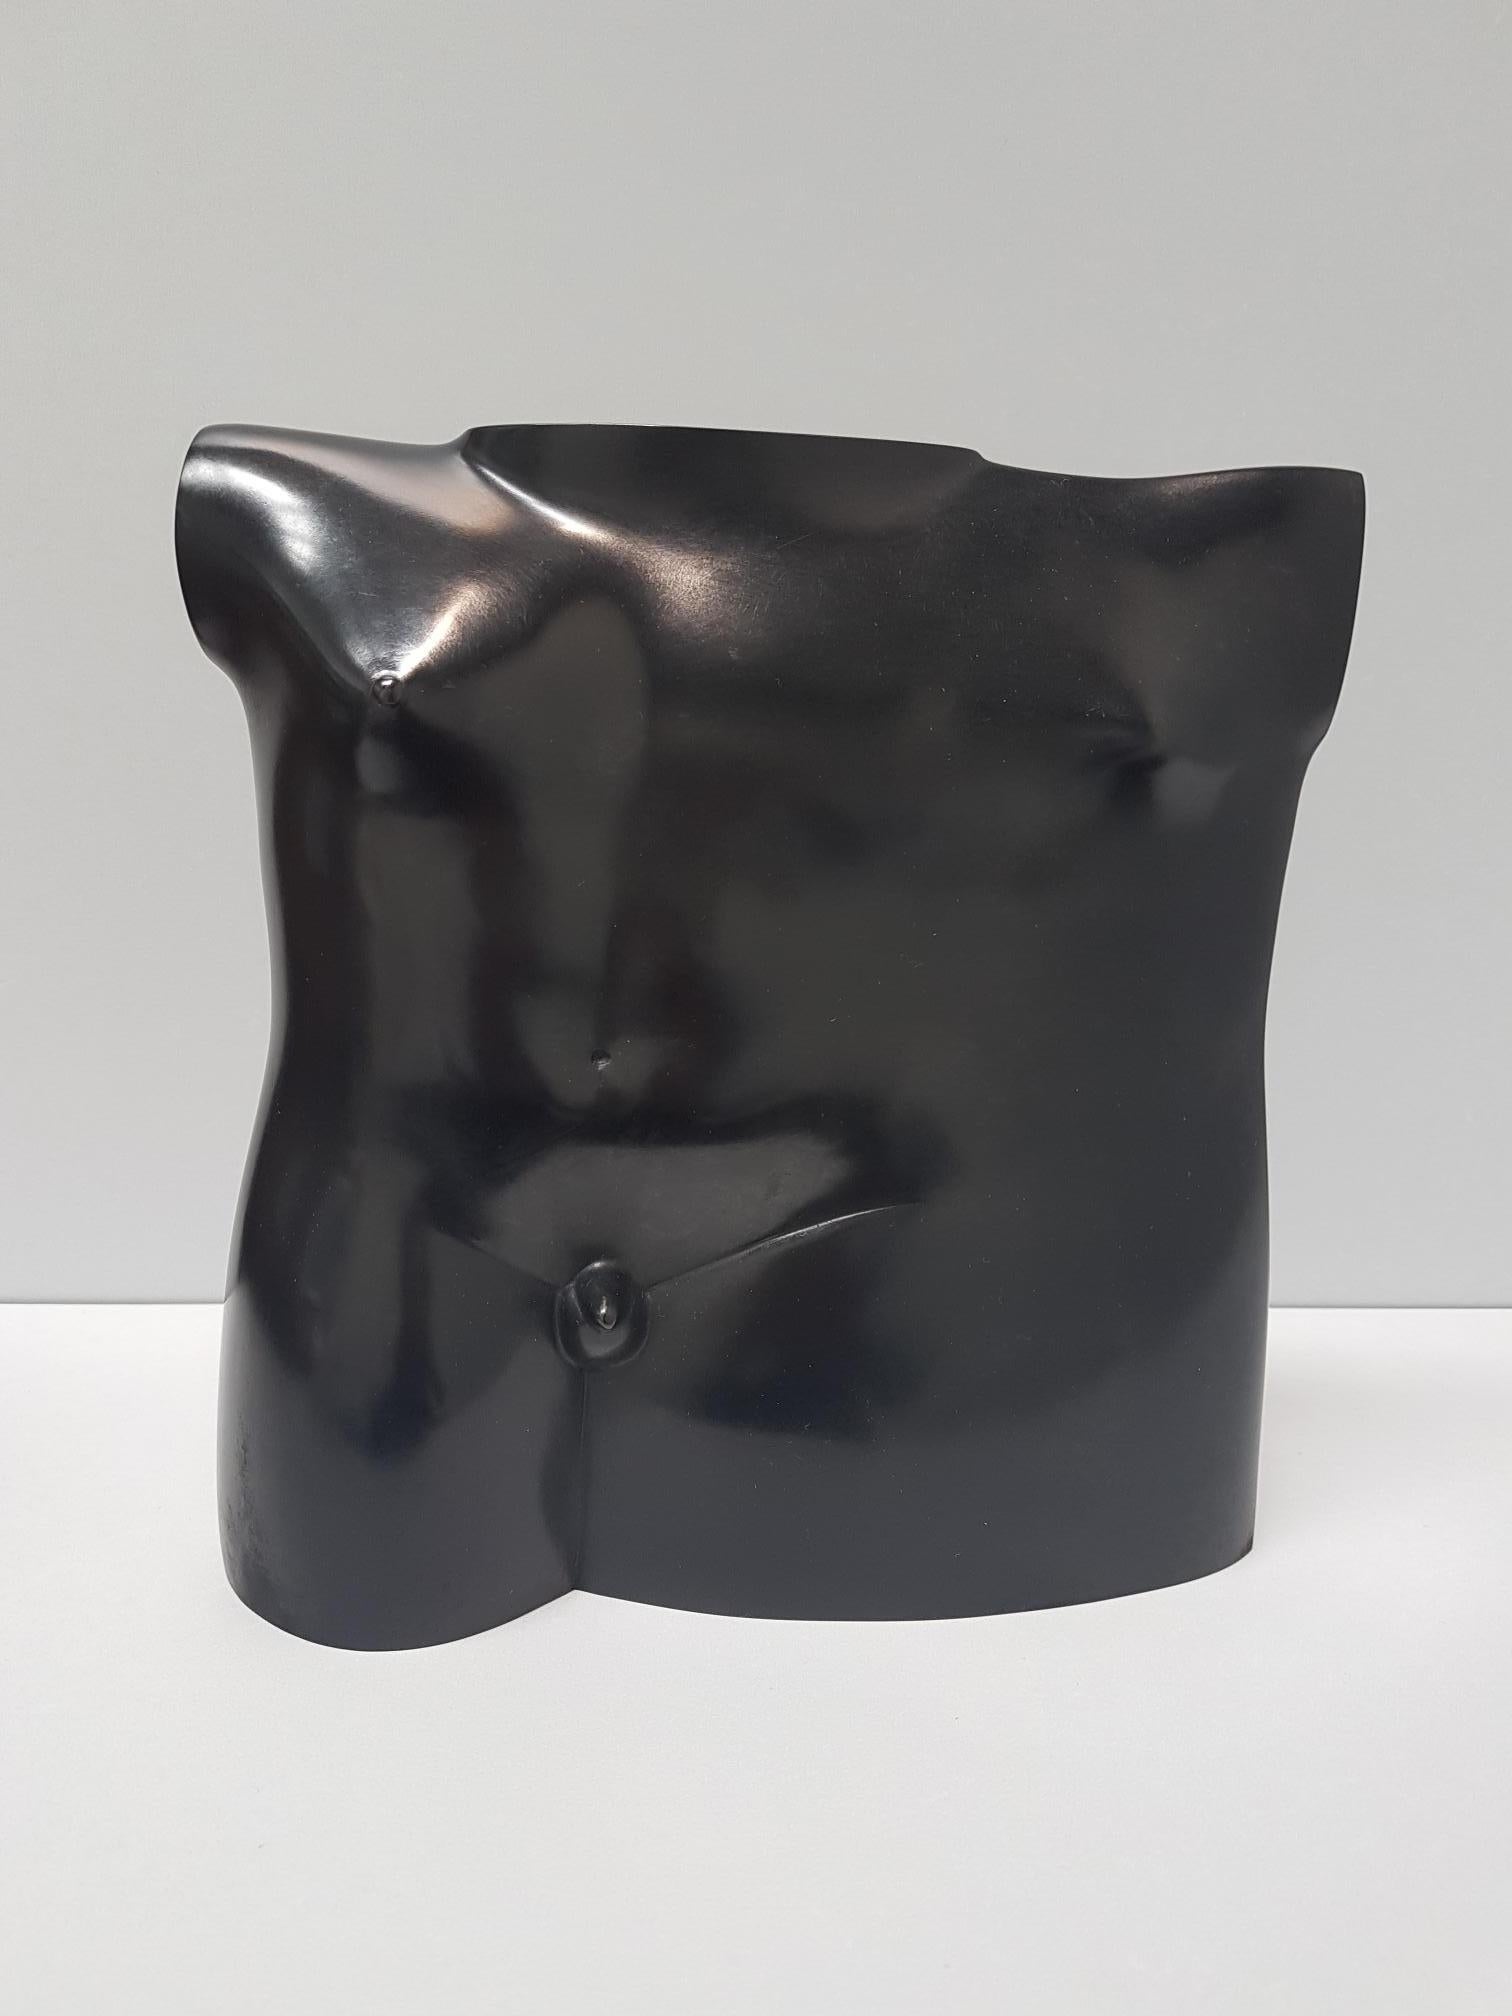 KOBE Nude Sculpture - Bustino Il Maschio Bronze Sculpture Contemporary In Stock